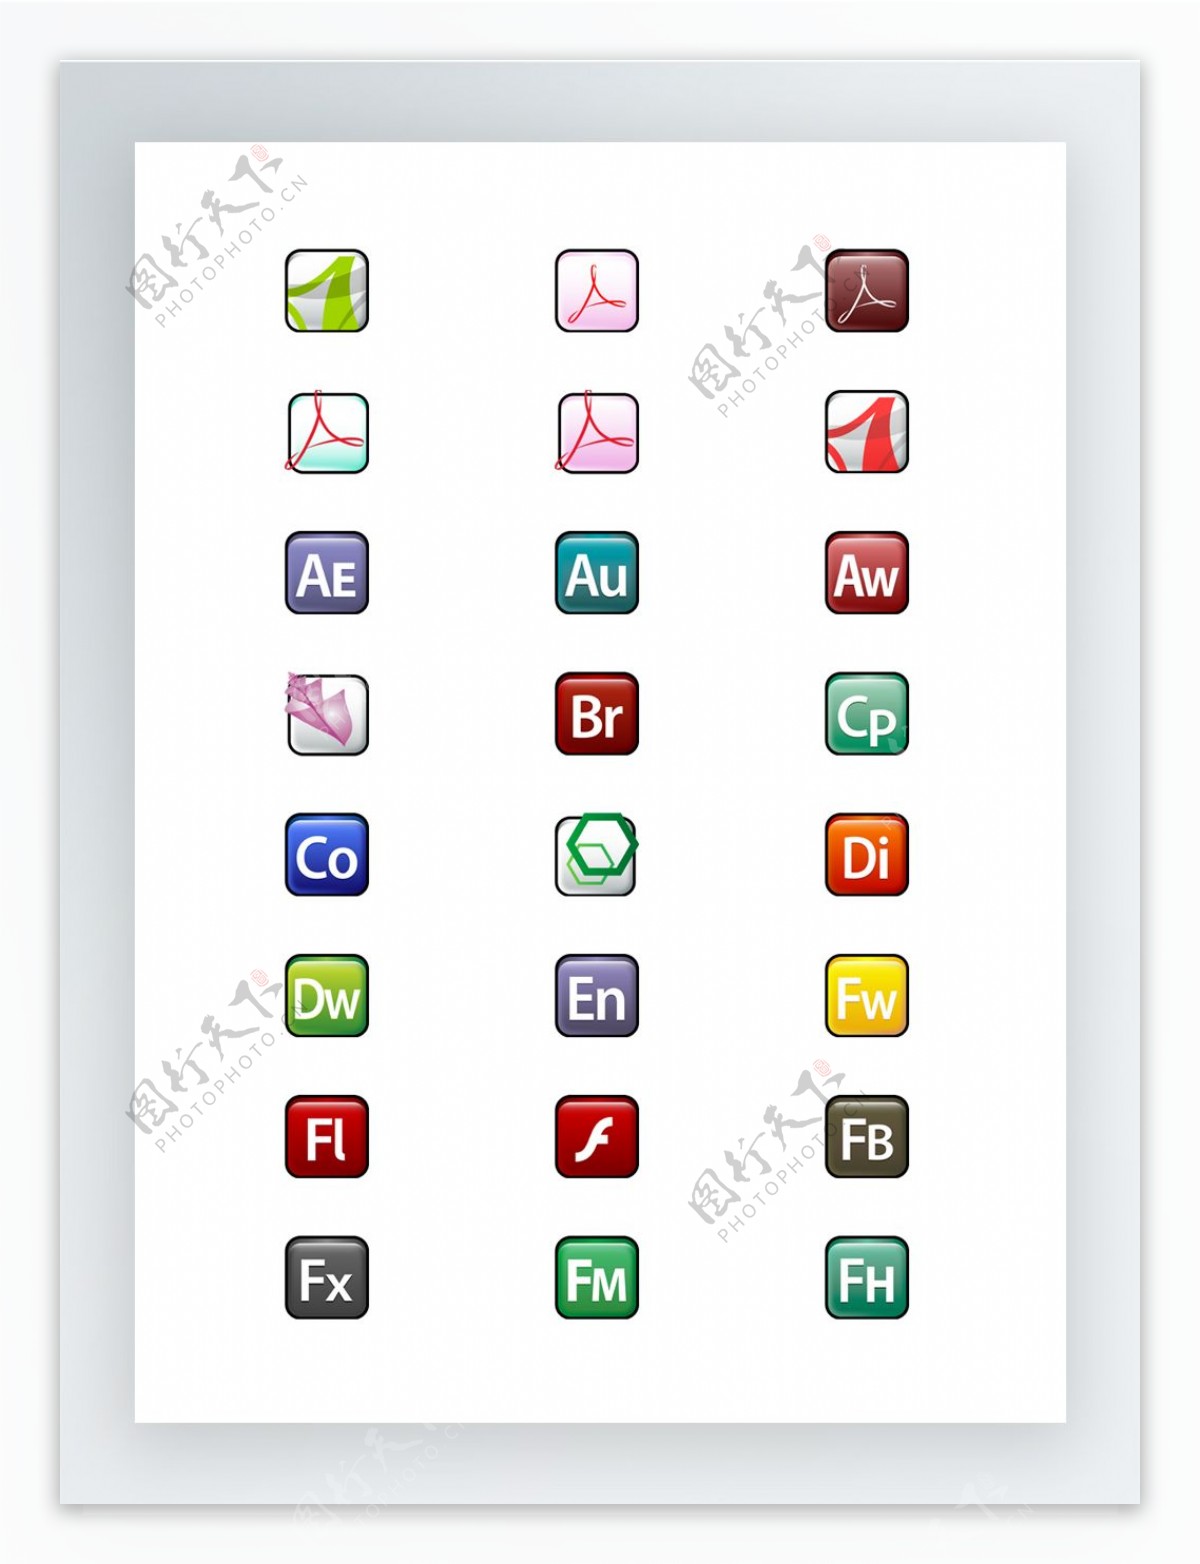 Adobe家族产品标志图标集